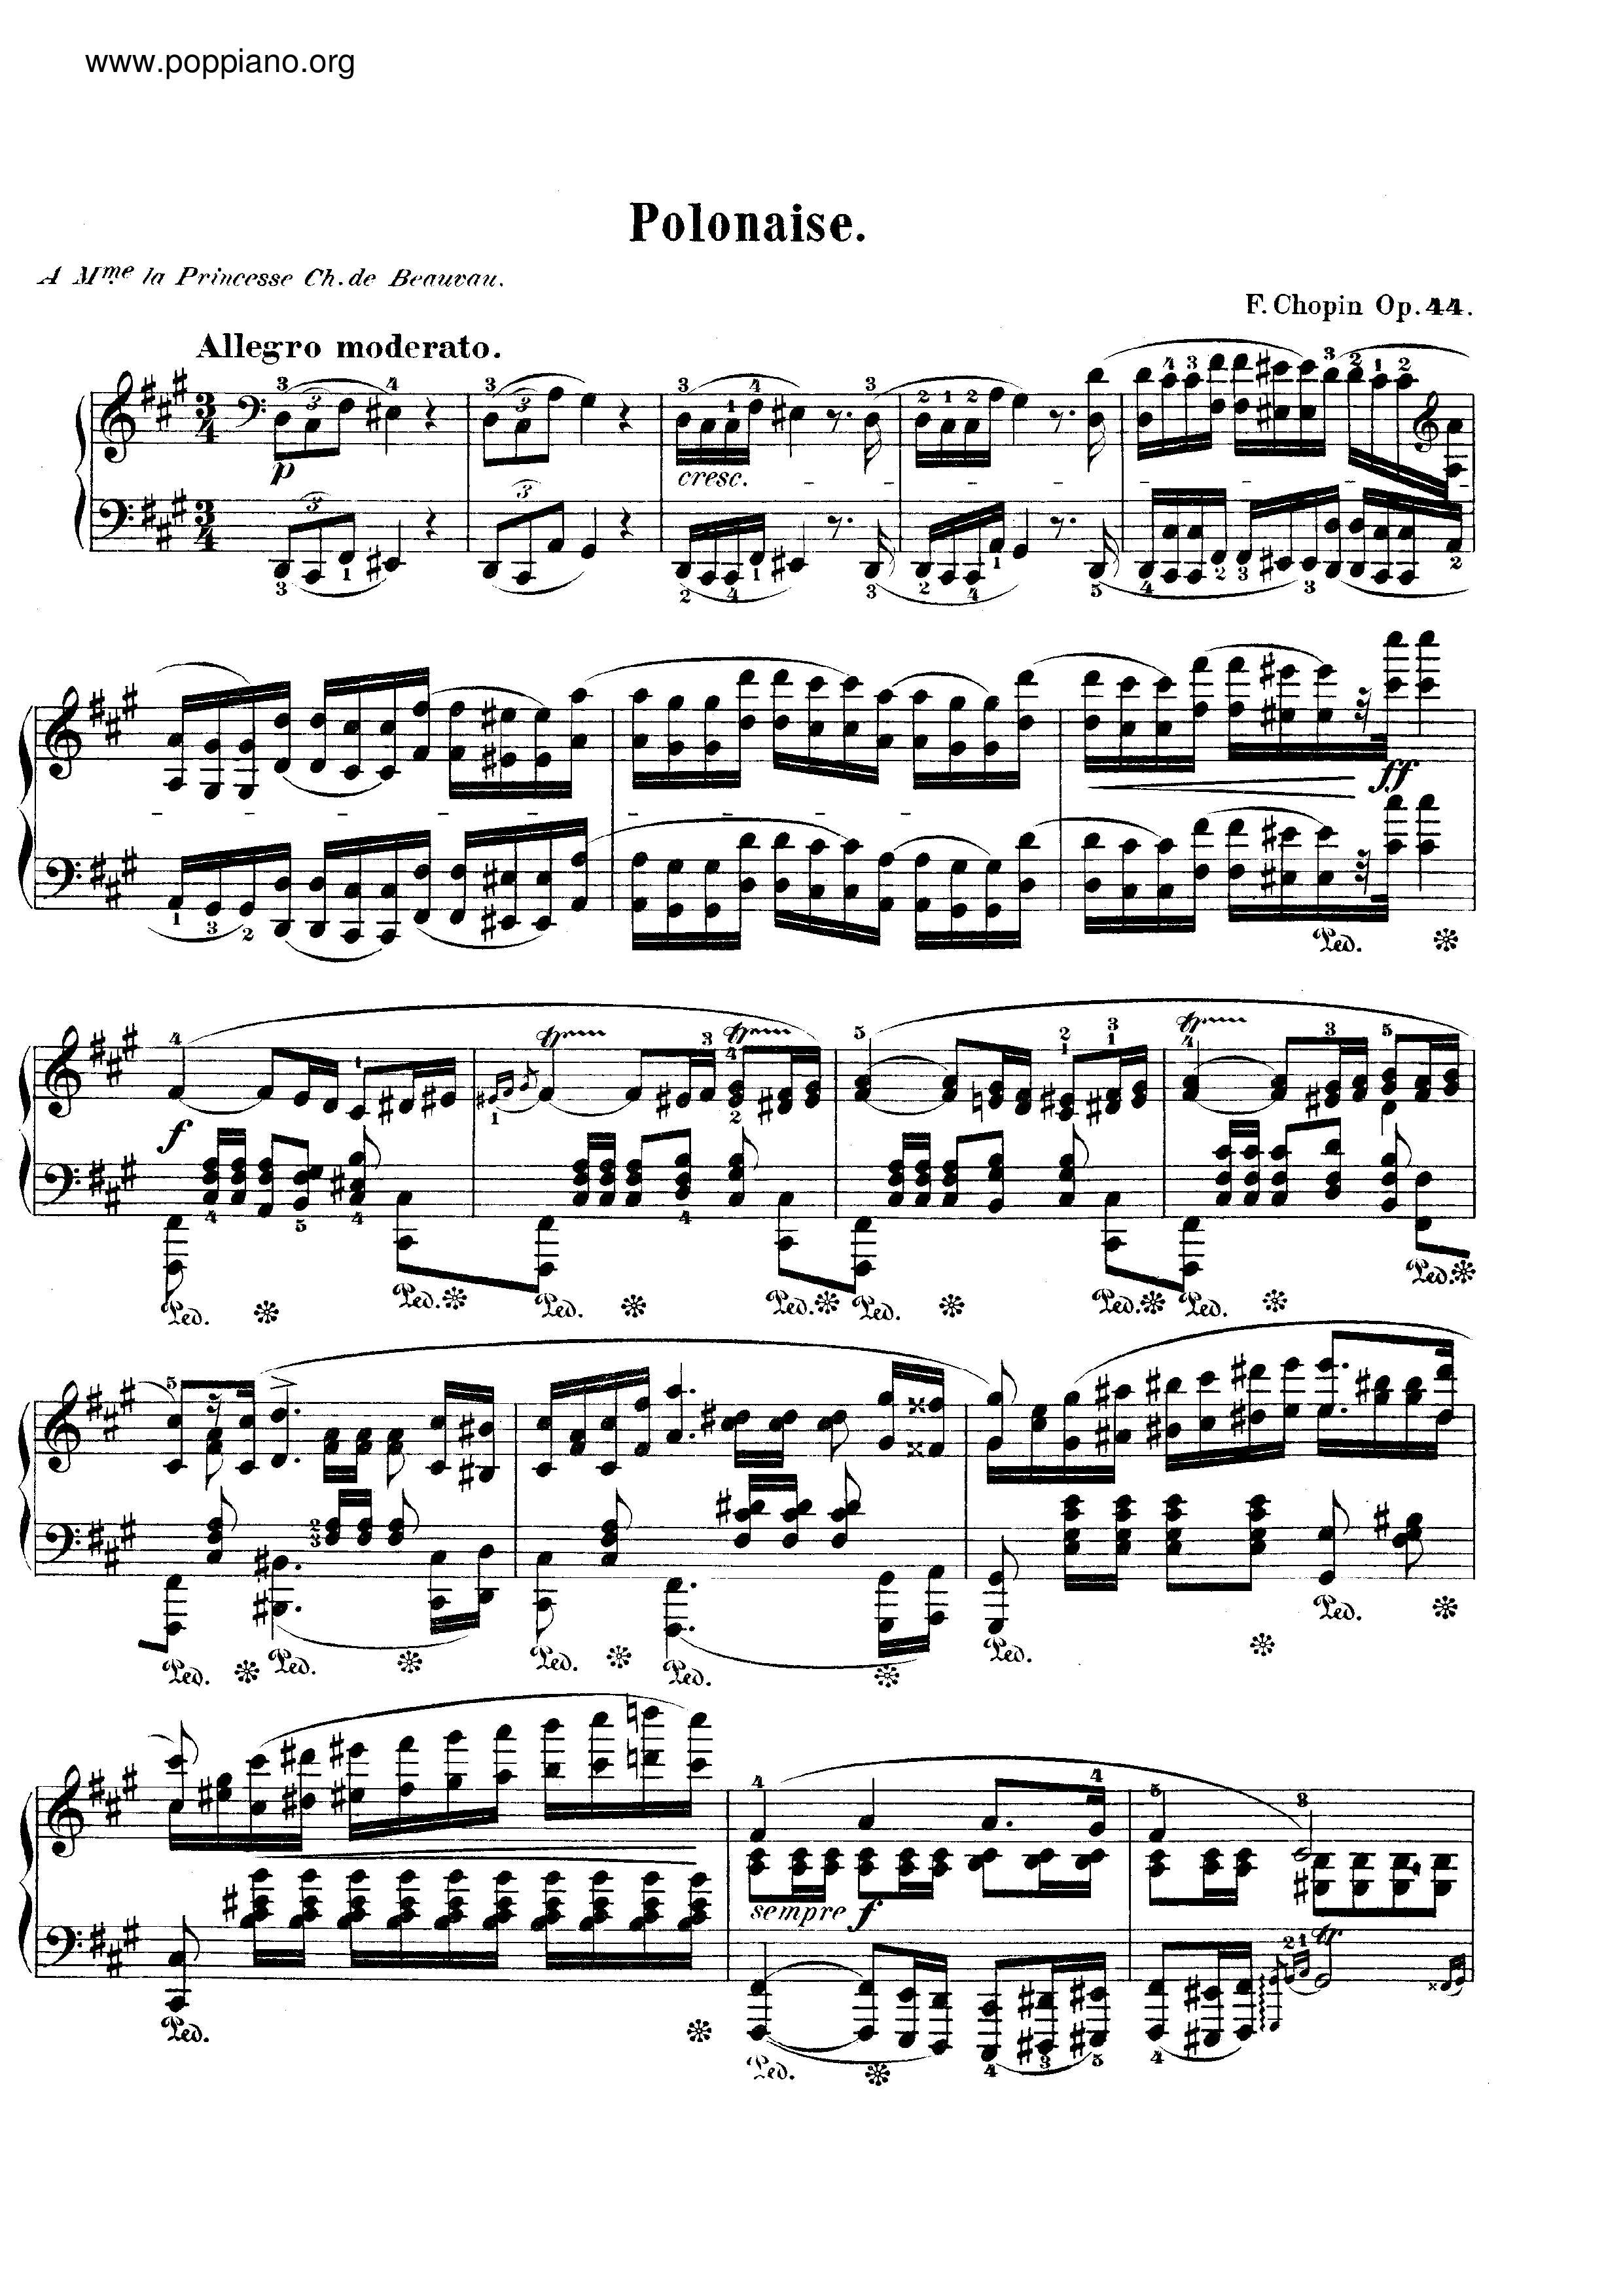 Polonaise in f sharp minor, Op. 44 Score